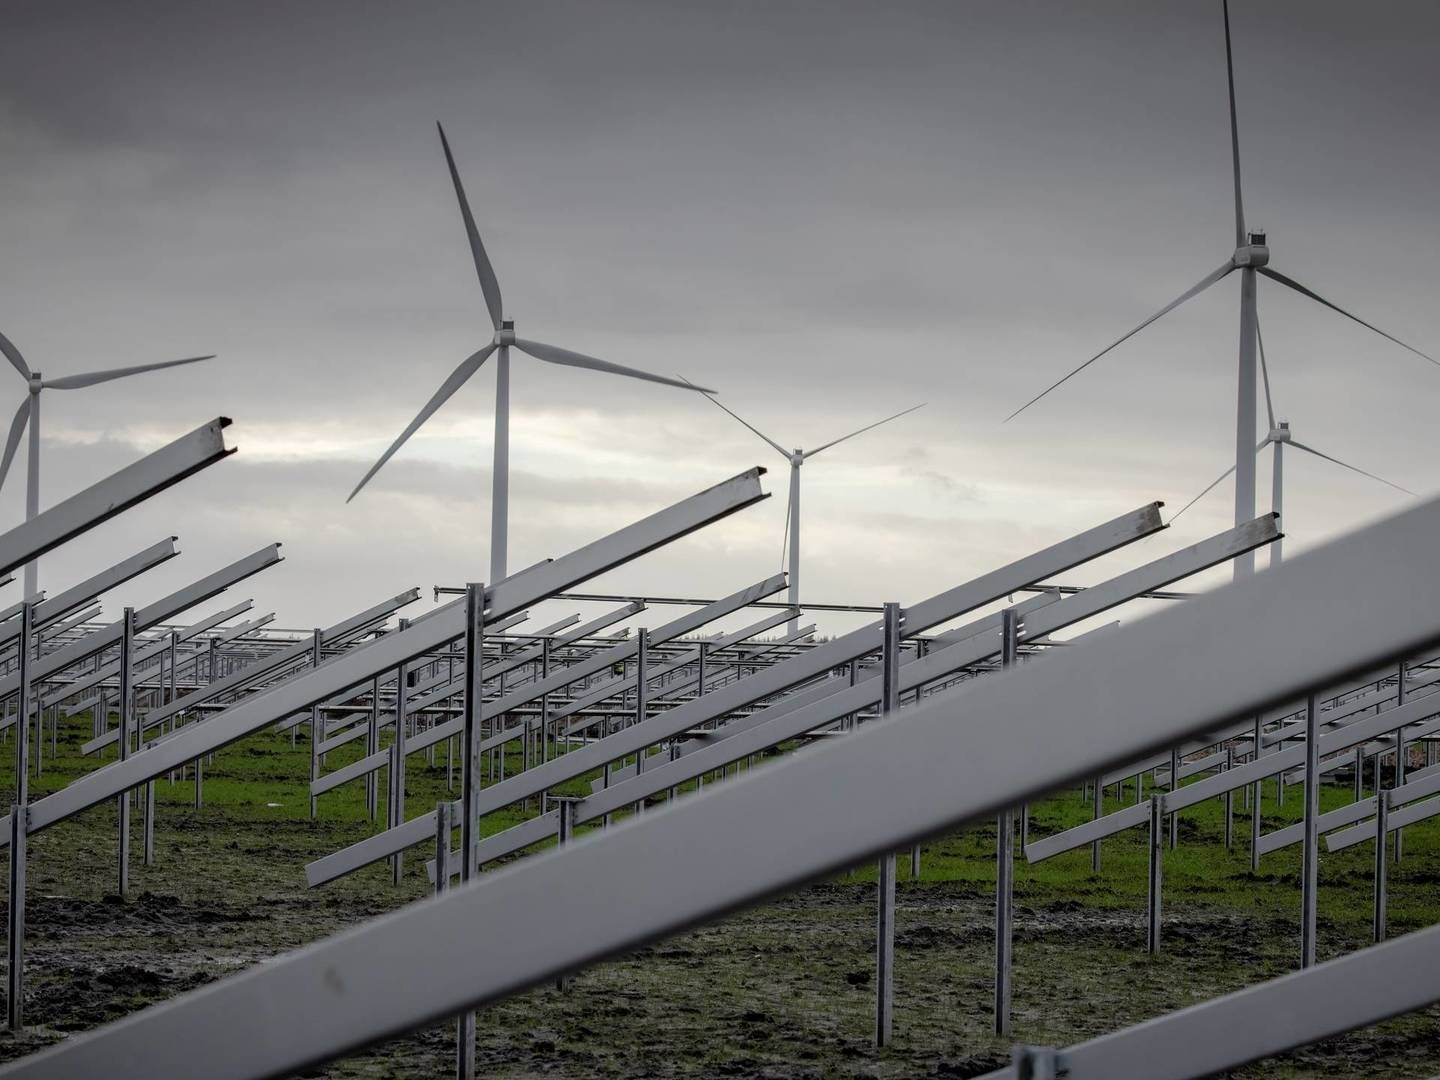 Aftalen får blandt andet ros for at gøre det lettere og hurtigere at banke vindmølle- og solcelleanlæg op på land. | Foto: Casper Dalhoff